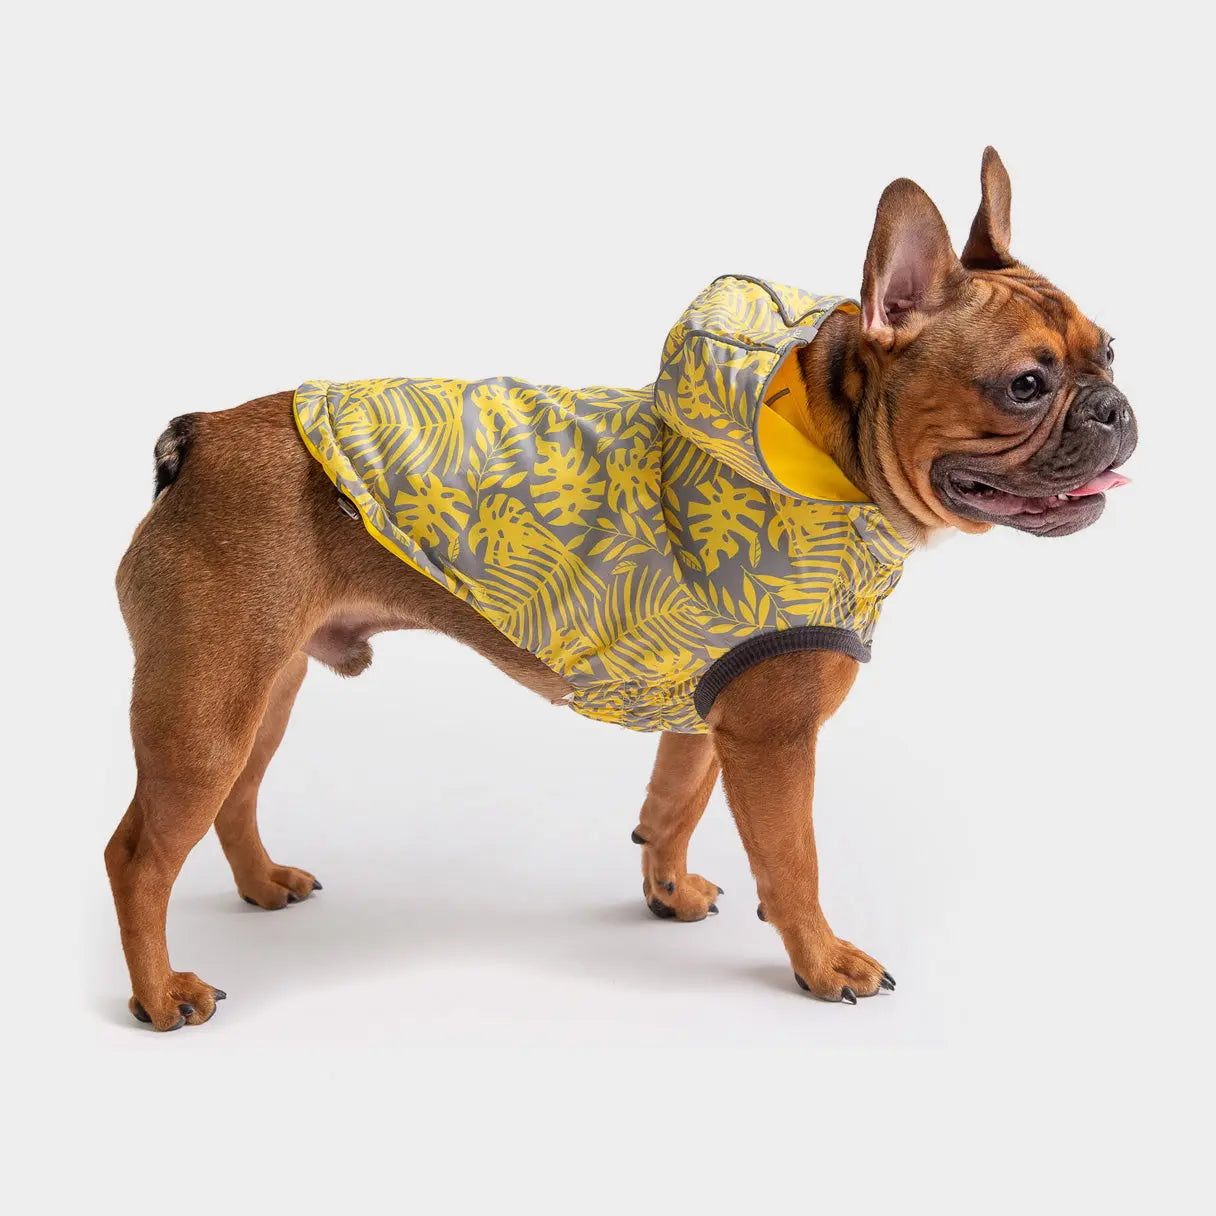 Reversible Raincoat - Yellow GF PET